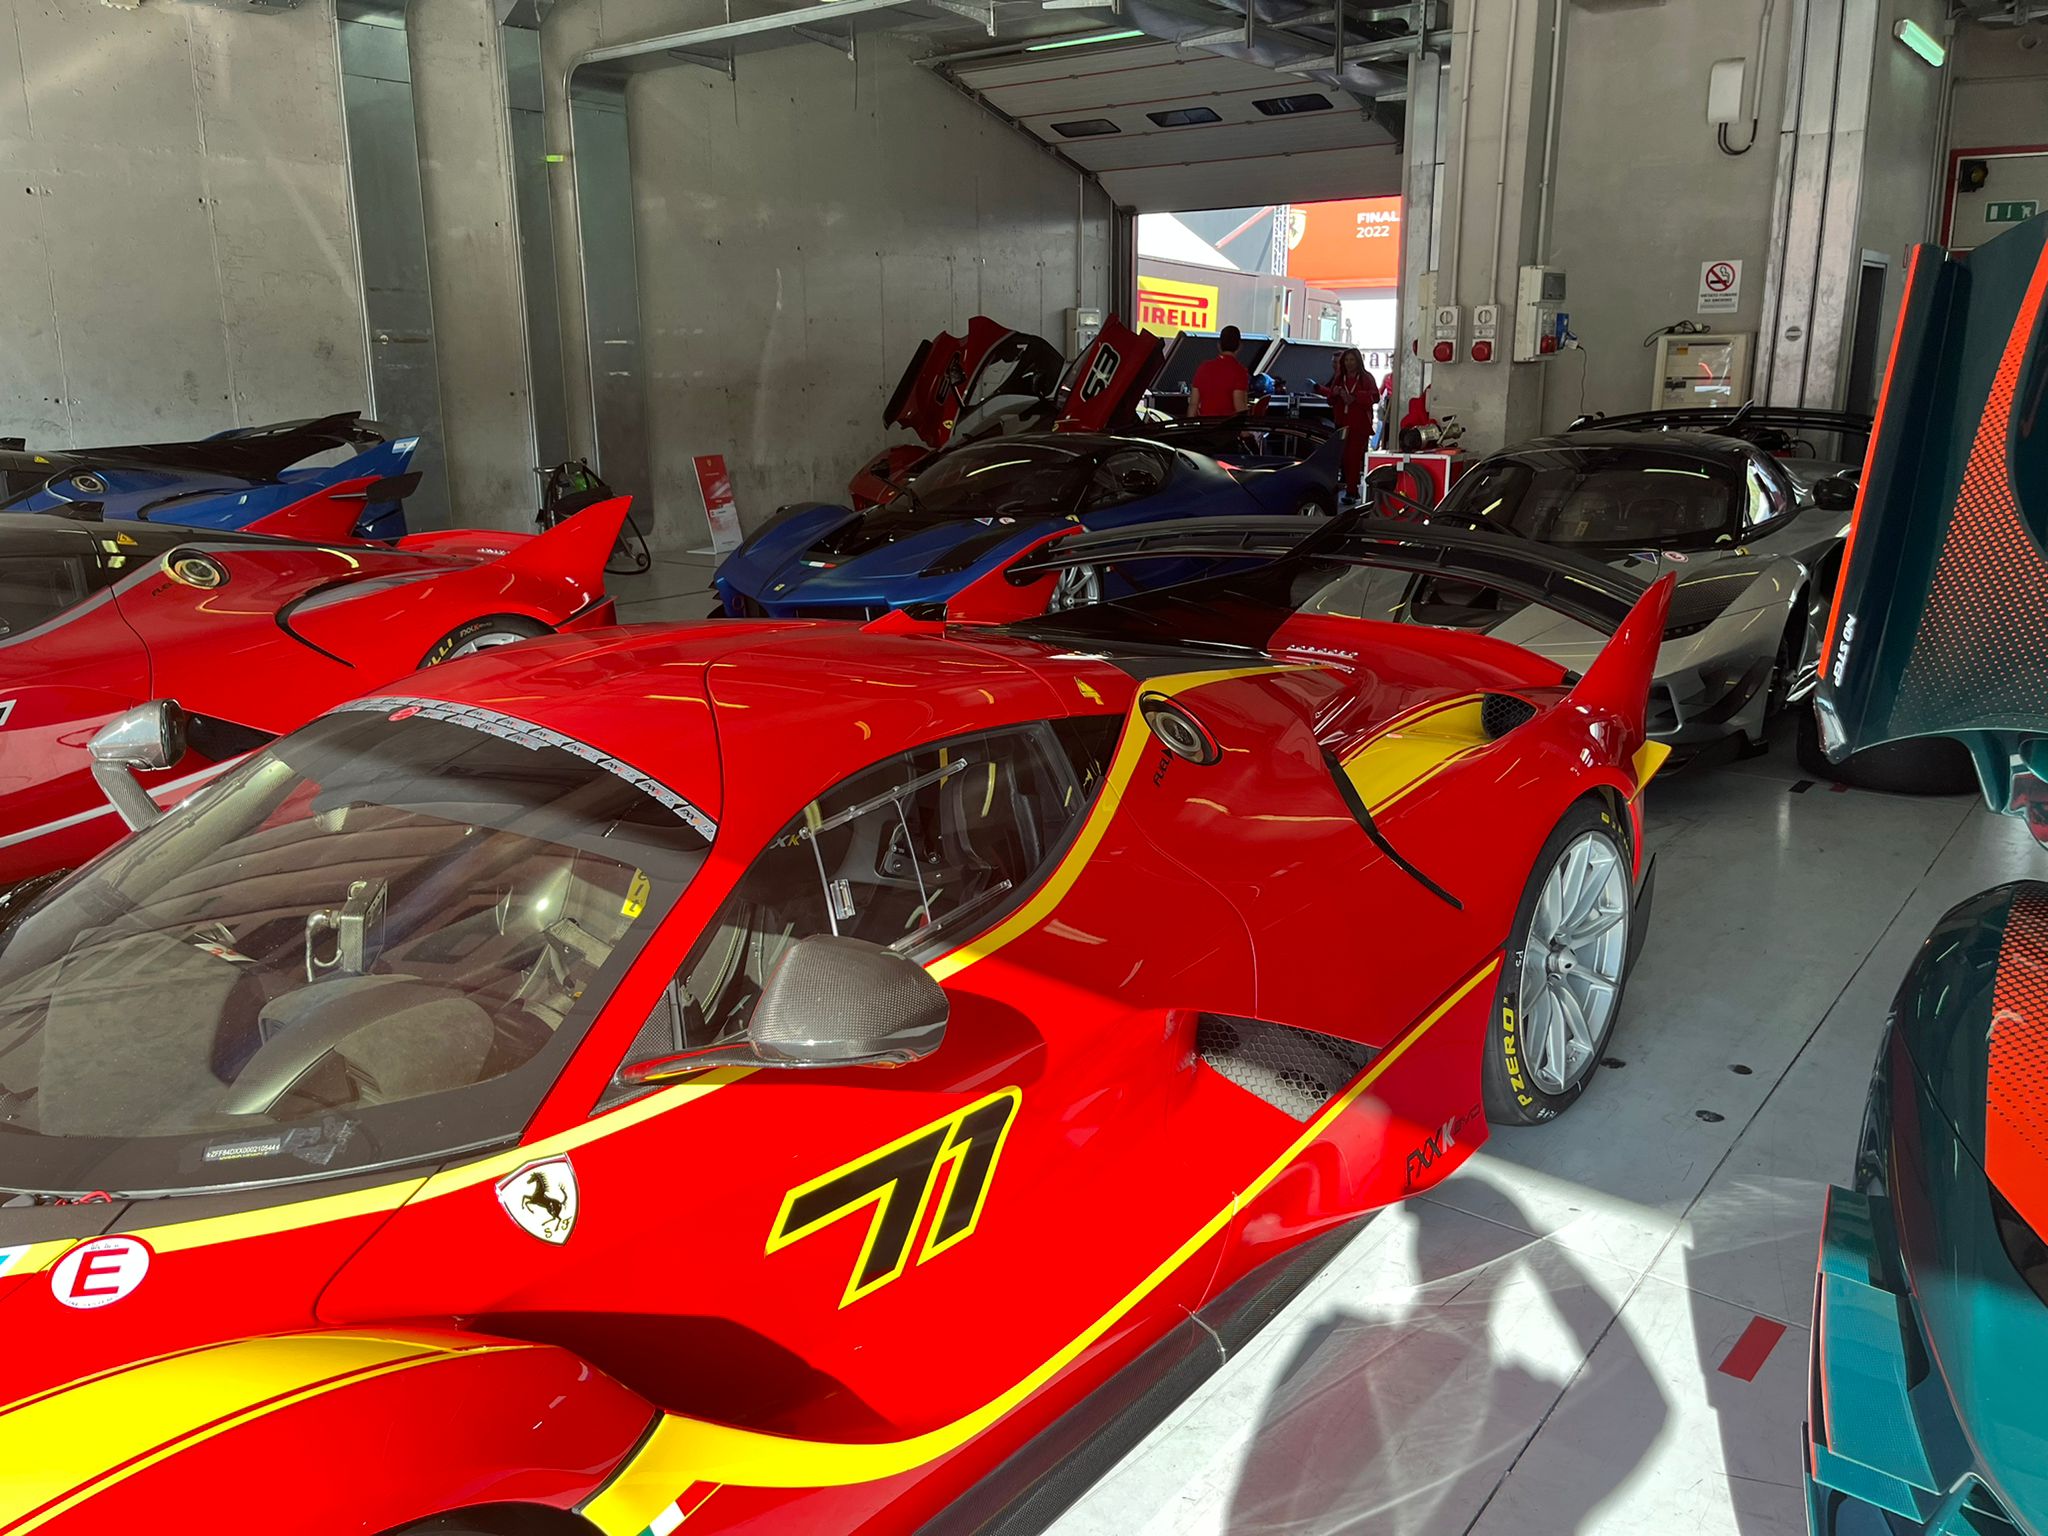 Some Ferraris.